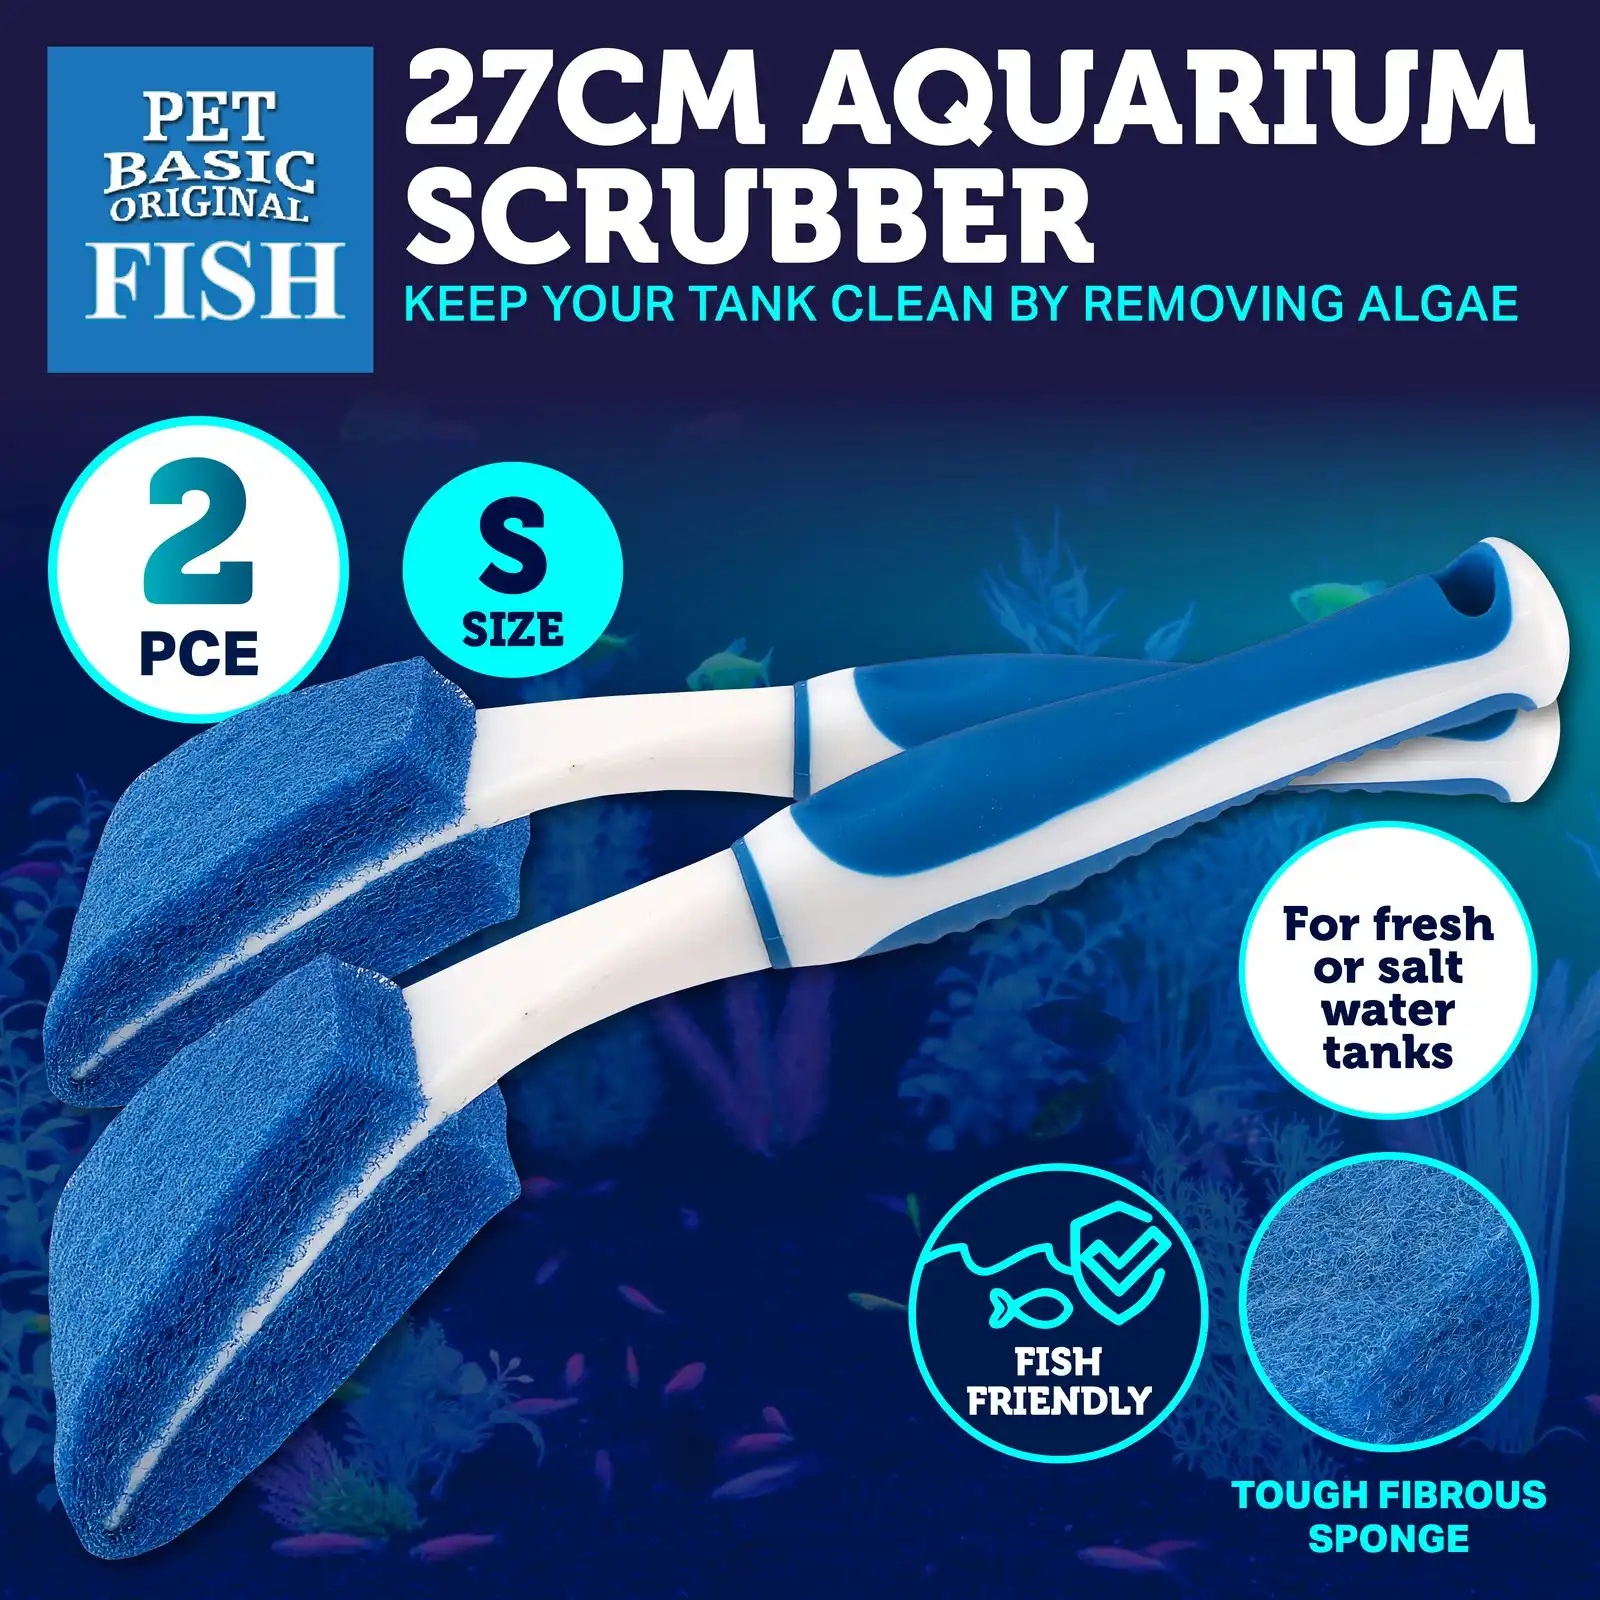 Pet Basic 2PK Aquarium Scrubber Tough Sponge/Scourer Cleaner Durable 27cm